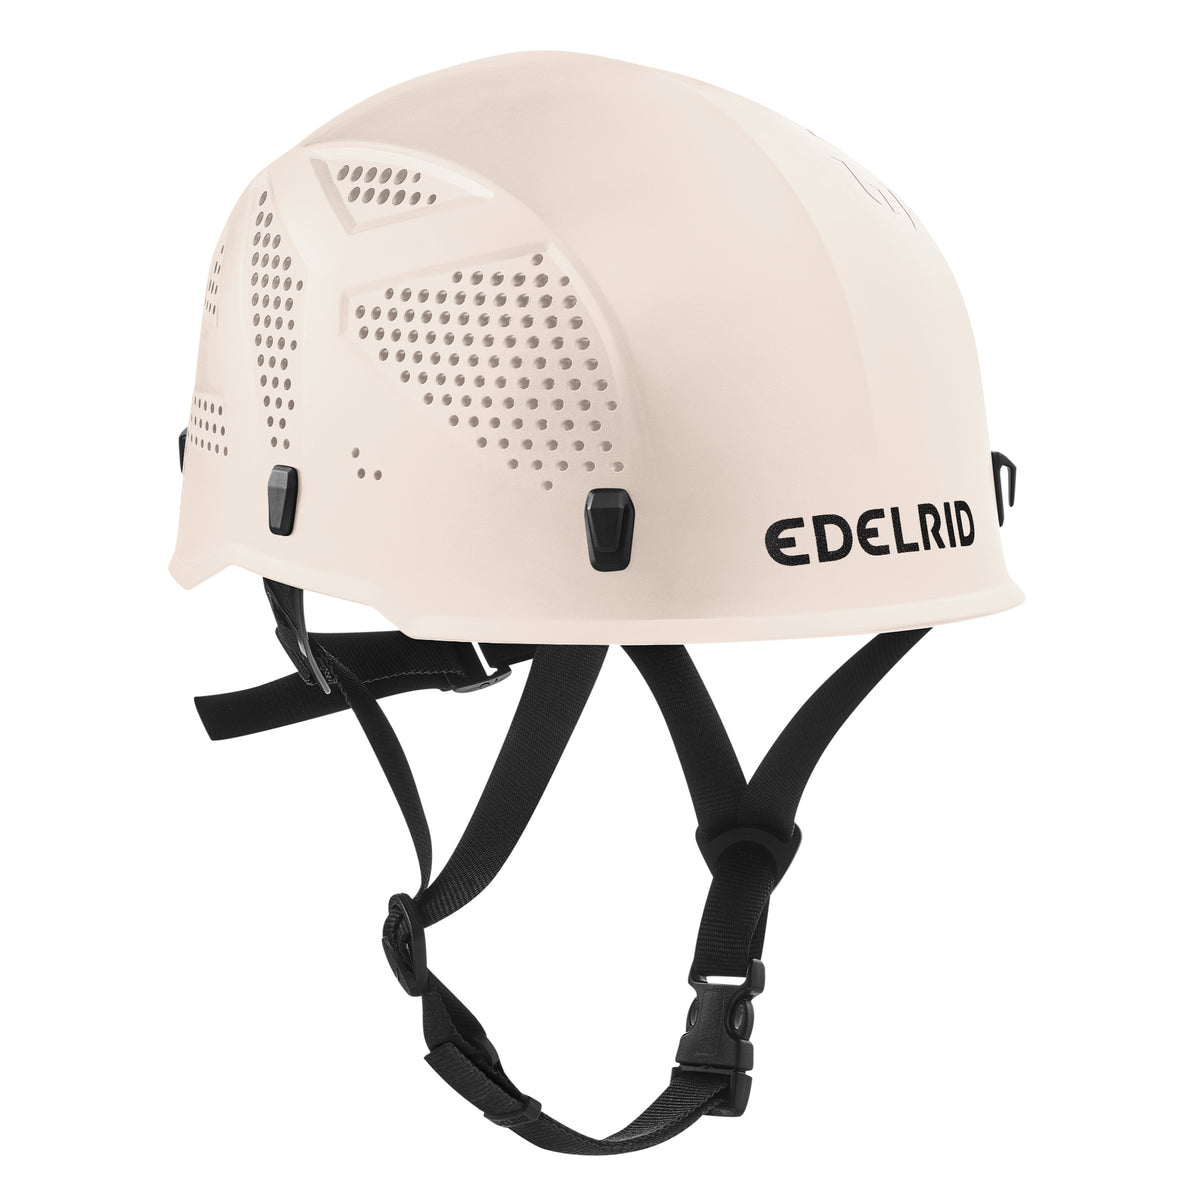 Edelrid Ultralight helmet in snow colour